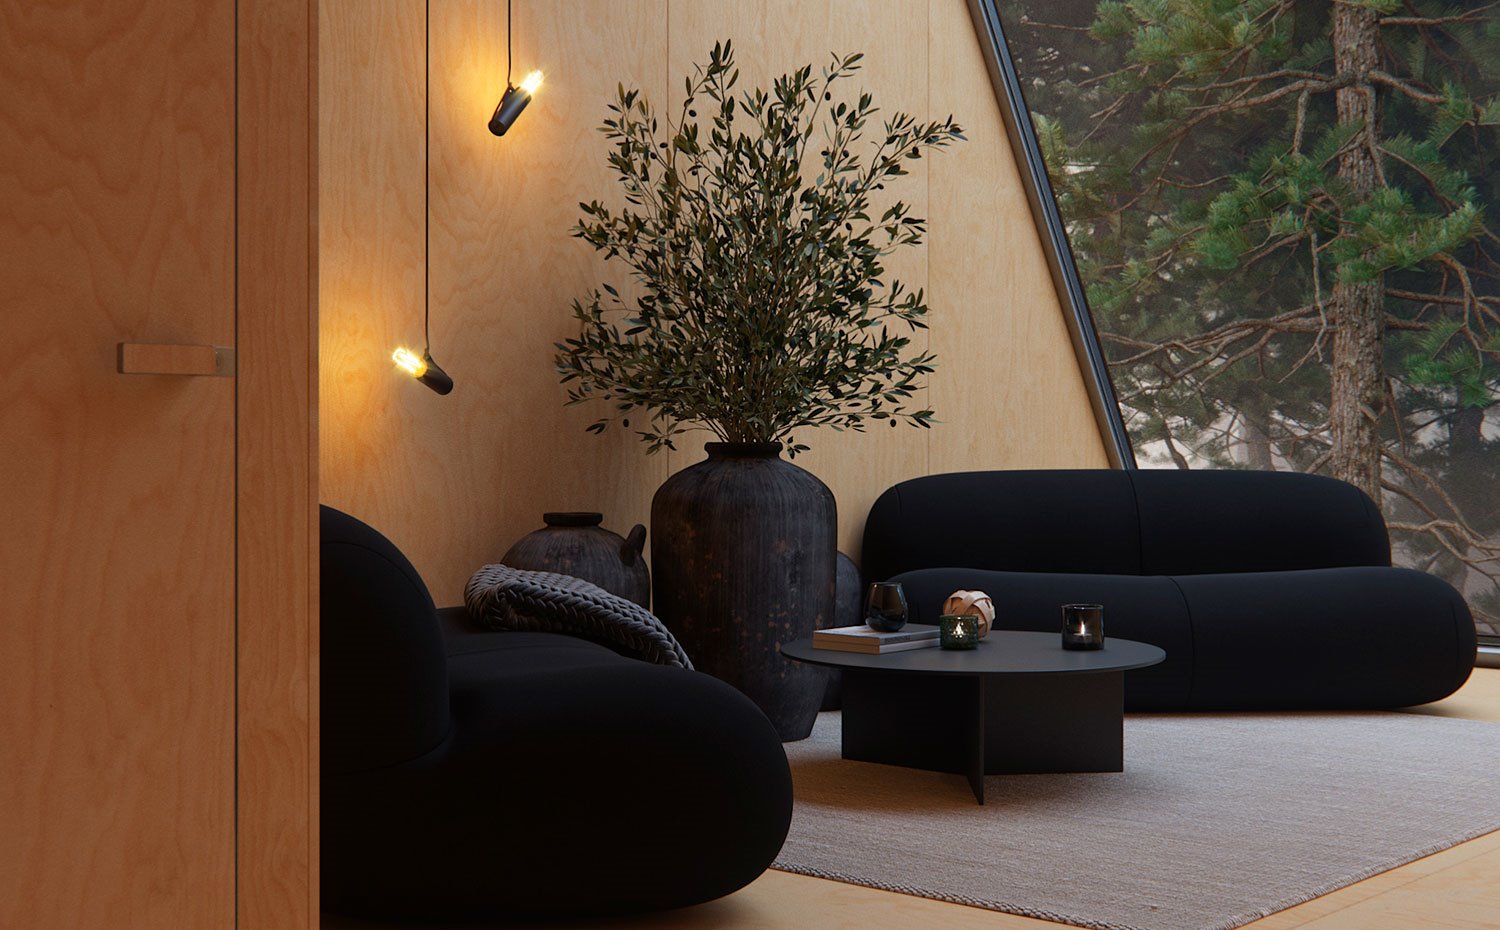 Salón con sofás en negro, grandes tinajas en gris antracita y mesa de centro circular, luminarias suspendidas junto a pared revestida de madera